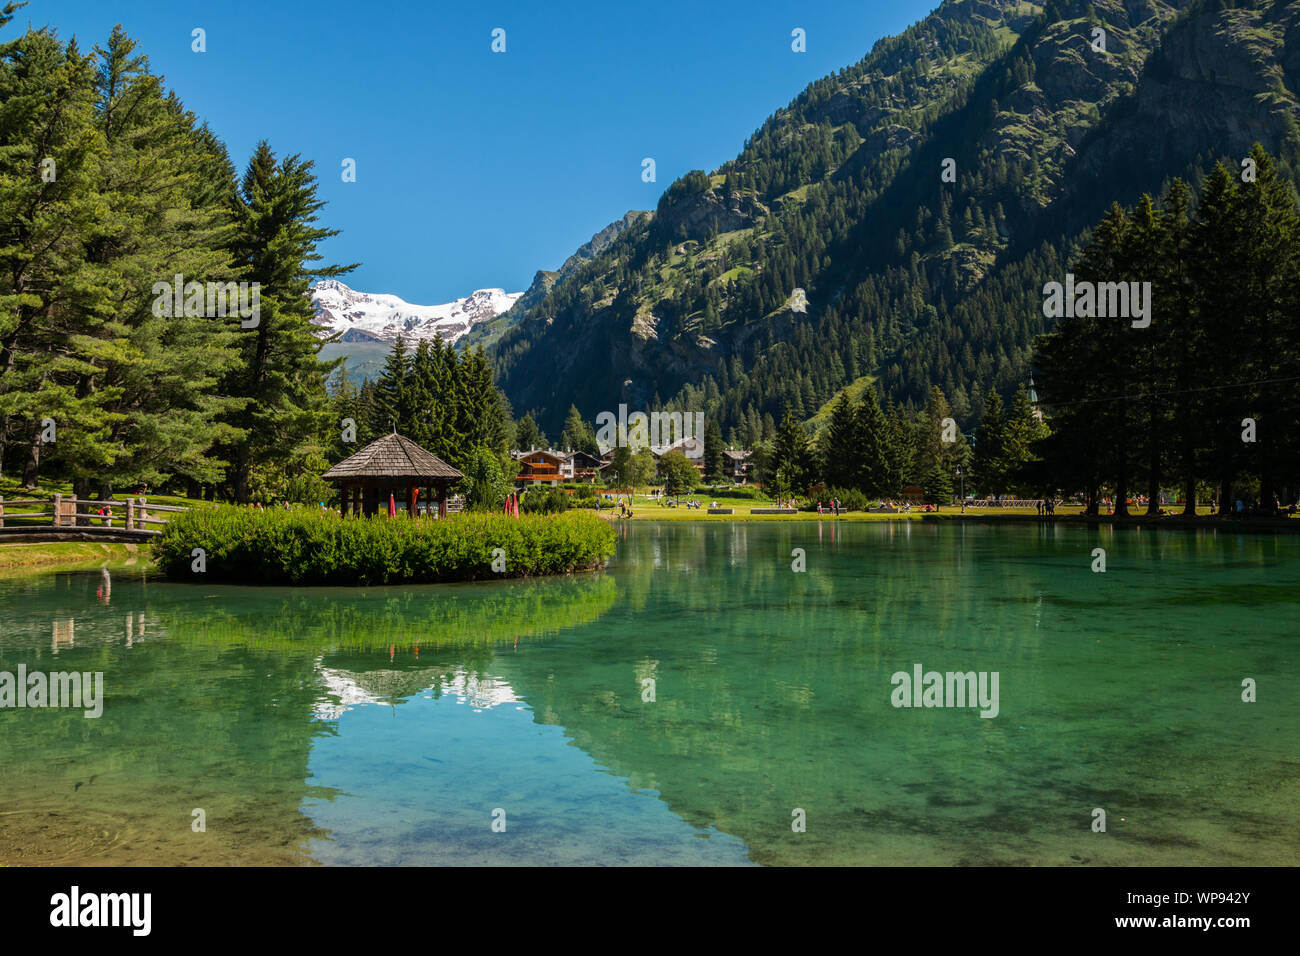 Lake Gover, Gressoney-Saint-Jean, Aosta, Valle d'Aosta, Italy Stock Photo -  Alamy